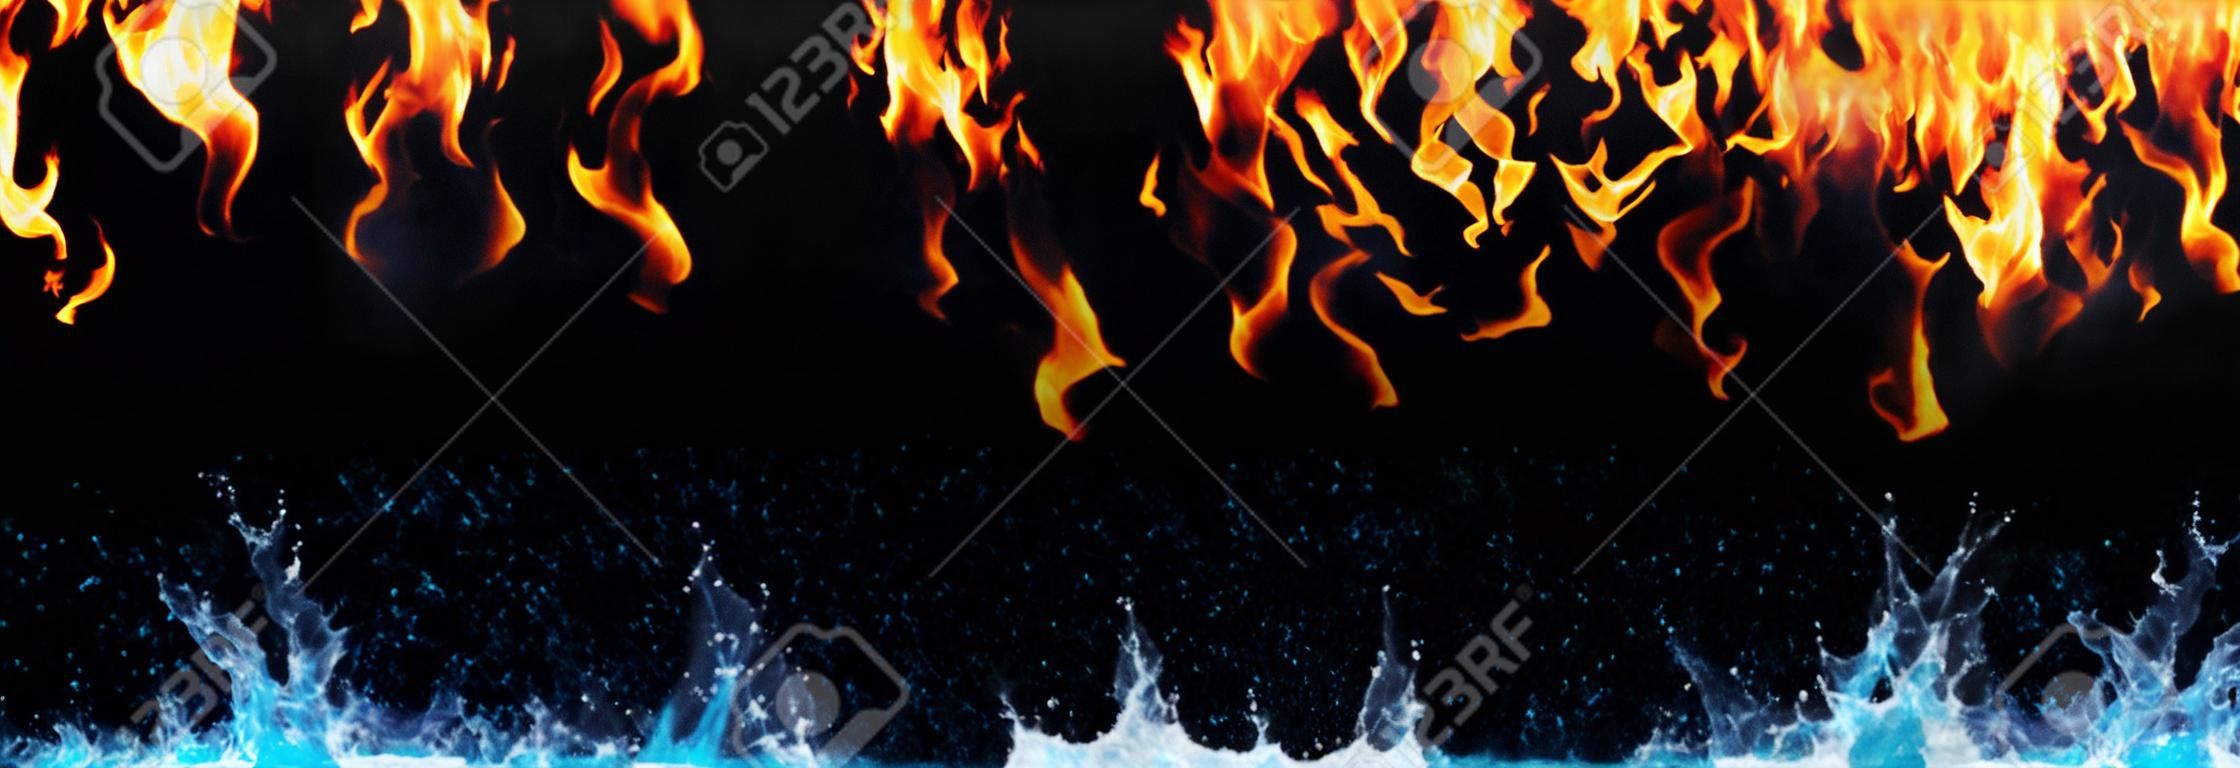 fogo e água no preto - energia oposta